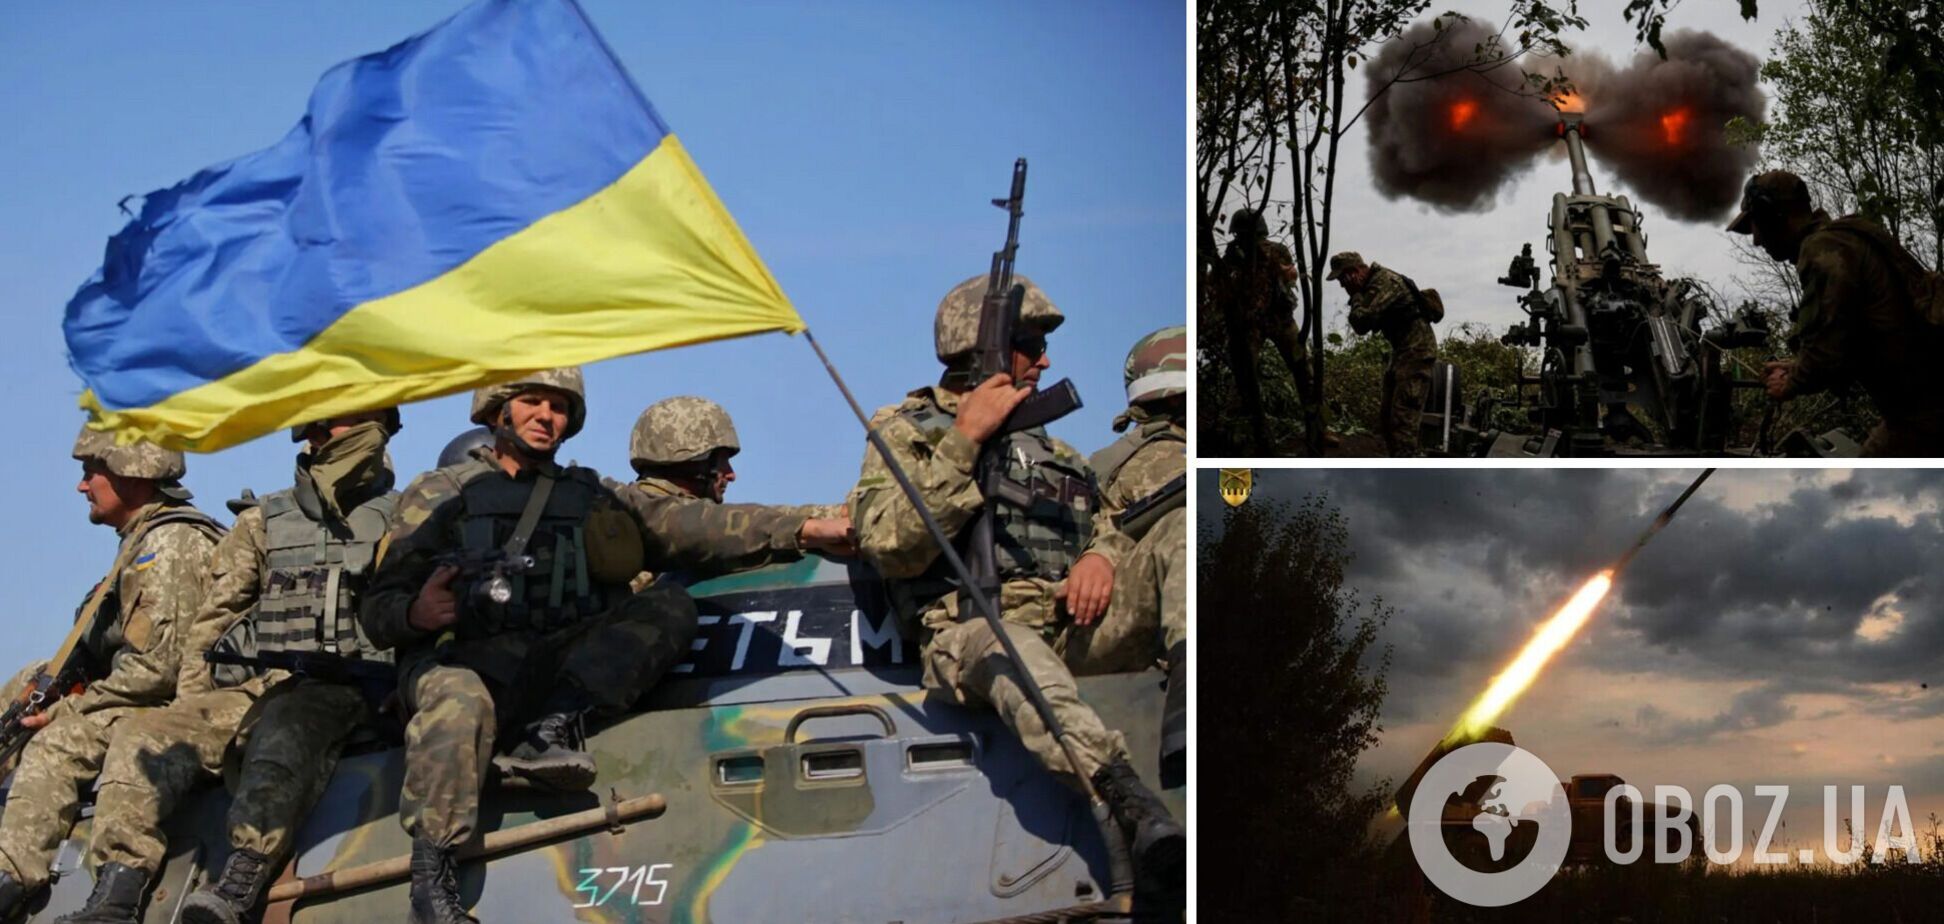 Минус 20 складов БК, штабов и баз оккупантов: украинские защитники устроили врагу новую взрывную неделю. Карта